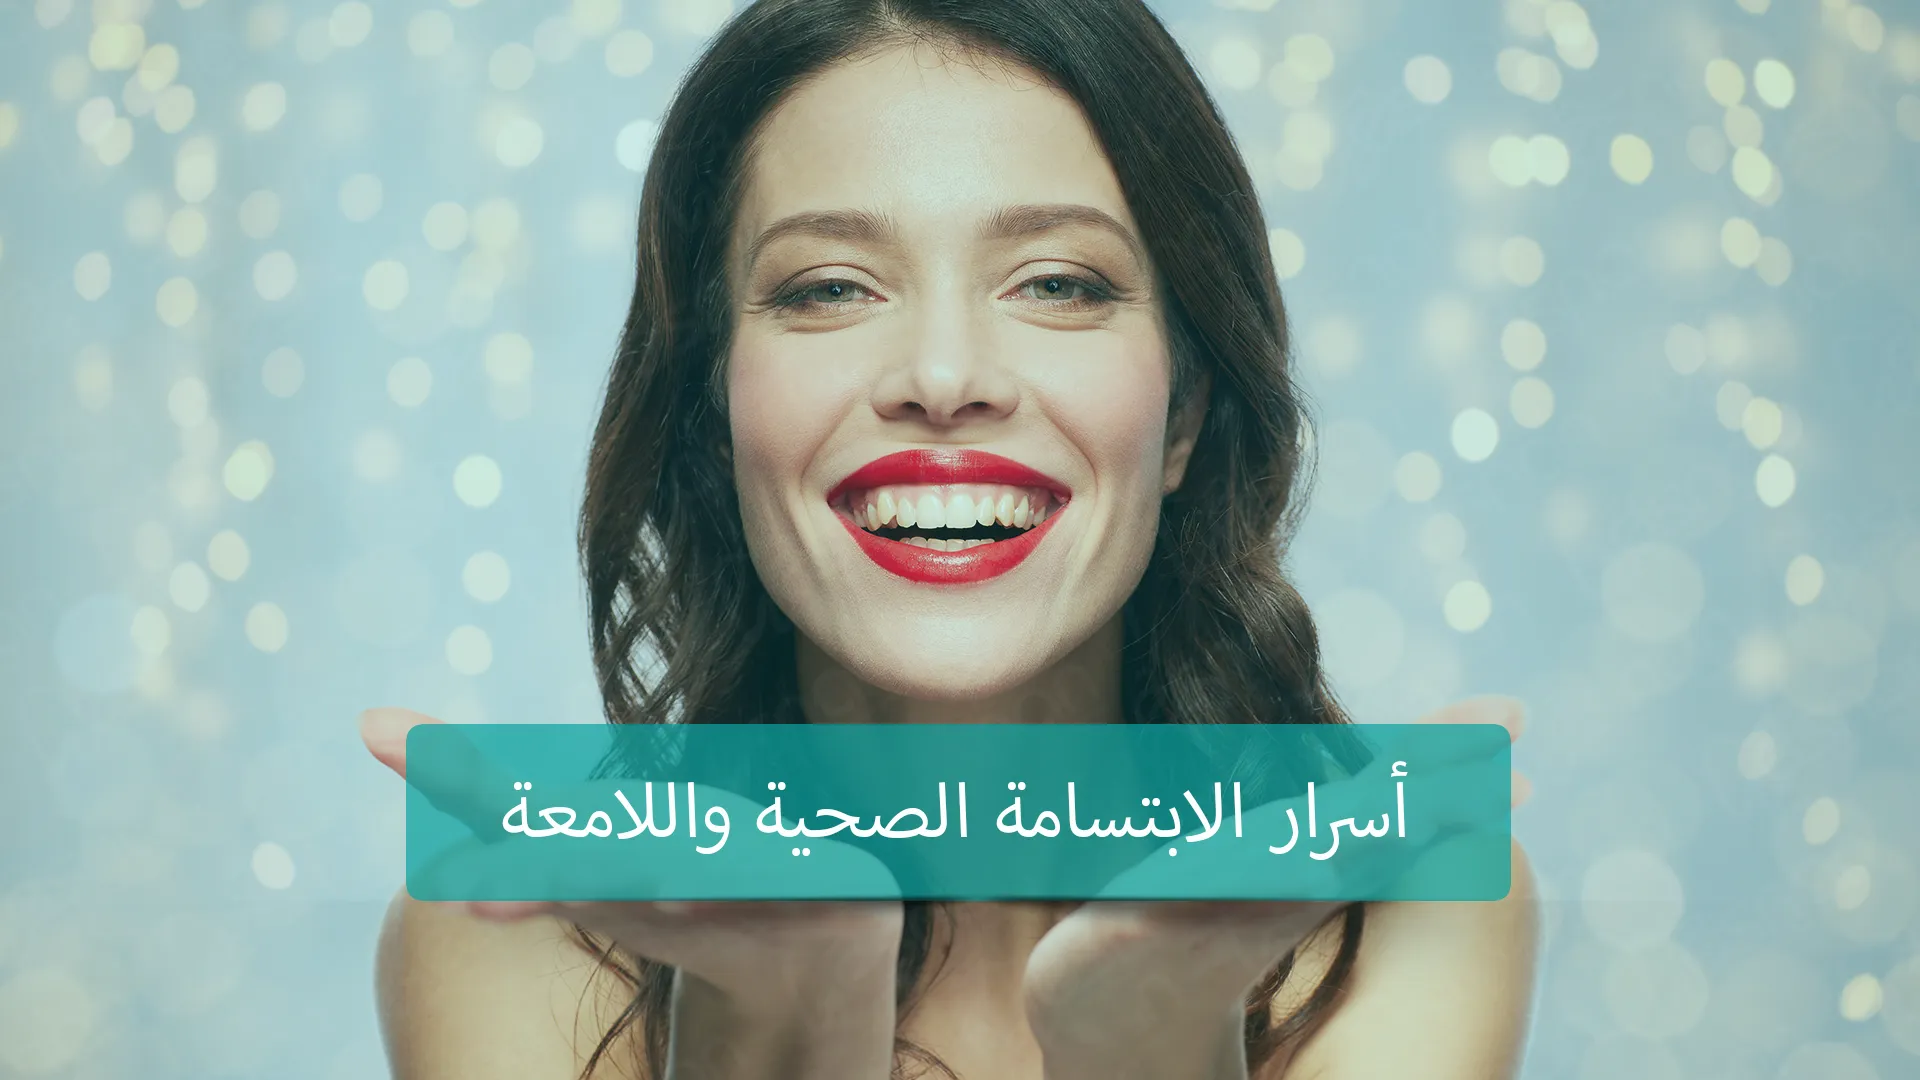 تجميل الأسنان في تركيا - إجراءات تحسين مظهر الأسنان التي تُقدم في تركيا لتعزيز الابتسامة والثقة بالنفس.